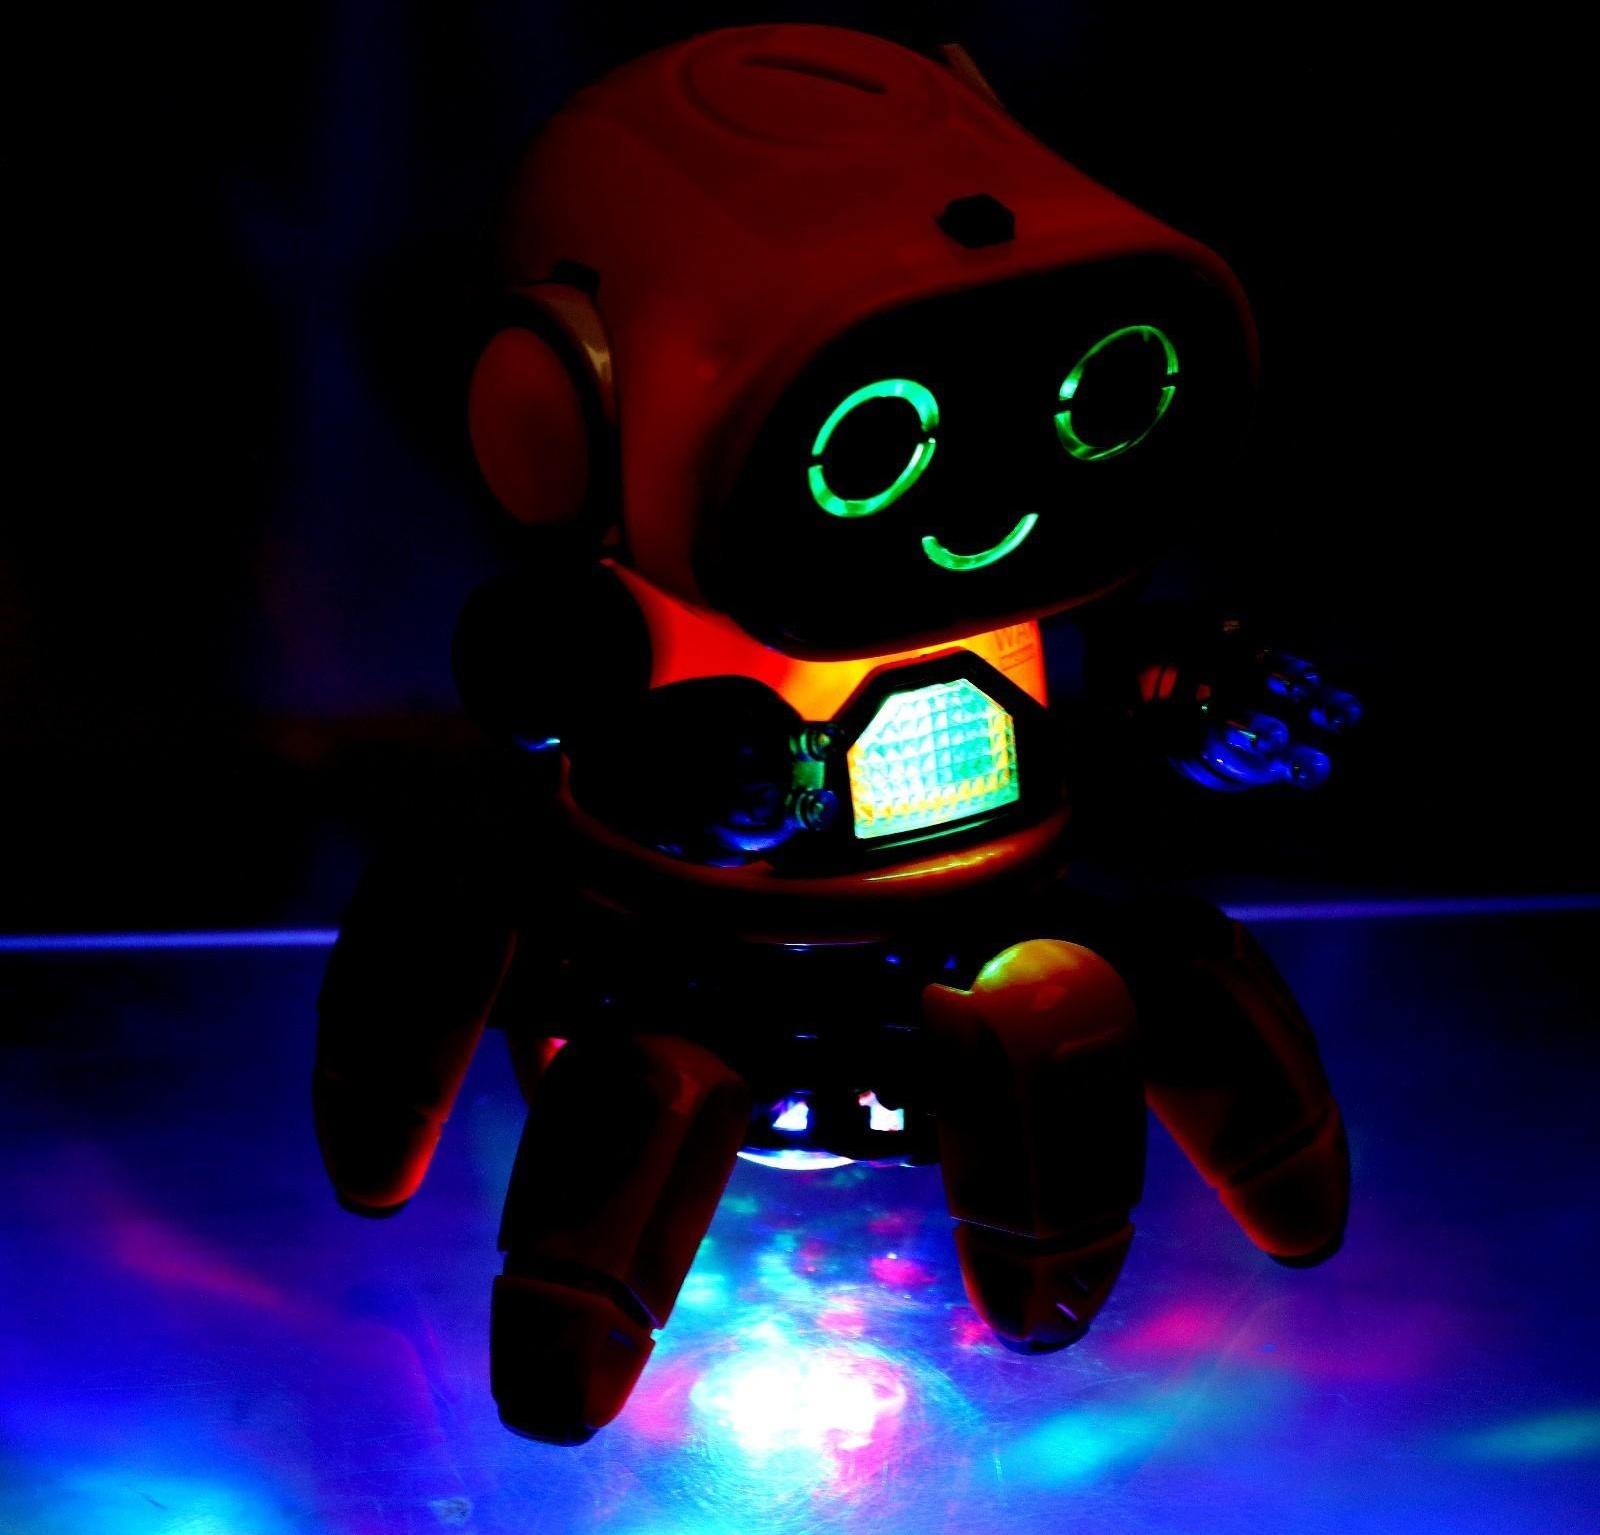 Робот радиоуправляемый «Осьминожик» ZR2091, световые и звуковые эффекты, цвета МИКС